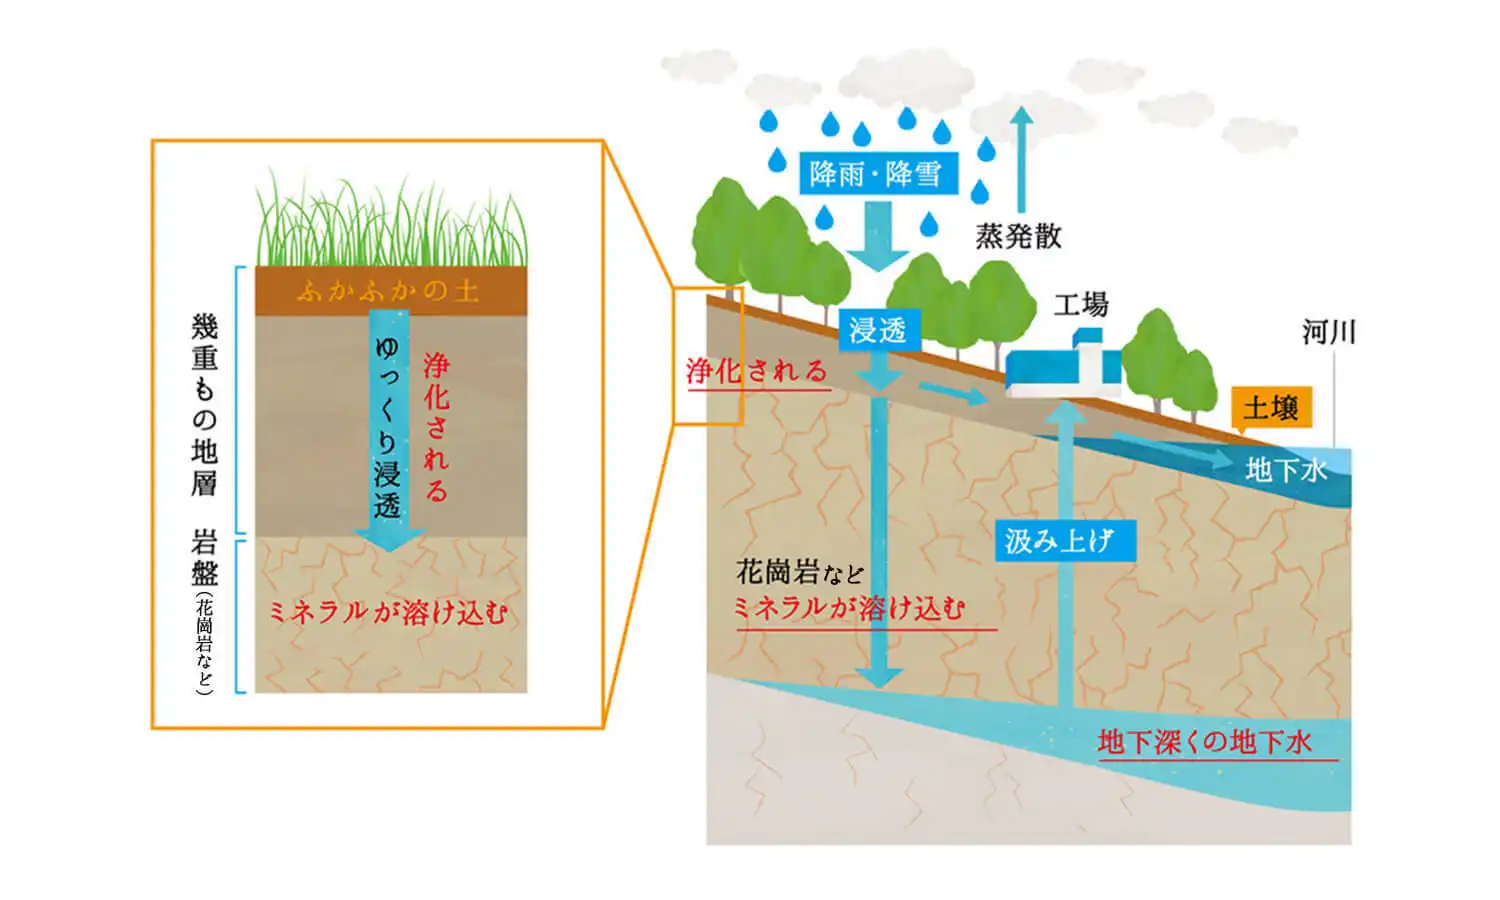 図：幾重もの地層からゆっくり浸透し浄化される。岩盤でミネラルが溶け込み、地下深くの地下水を汲み上げる